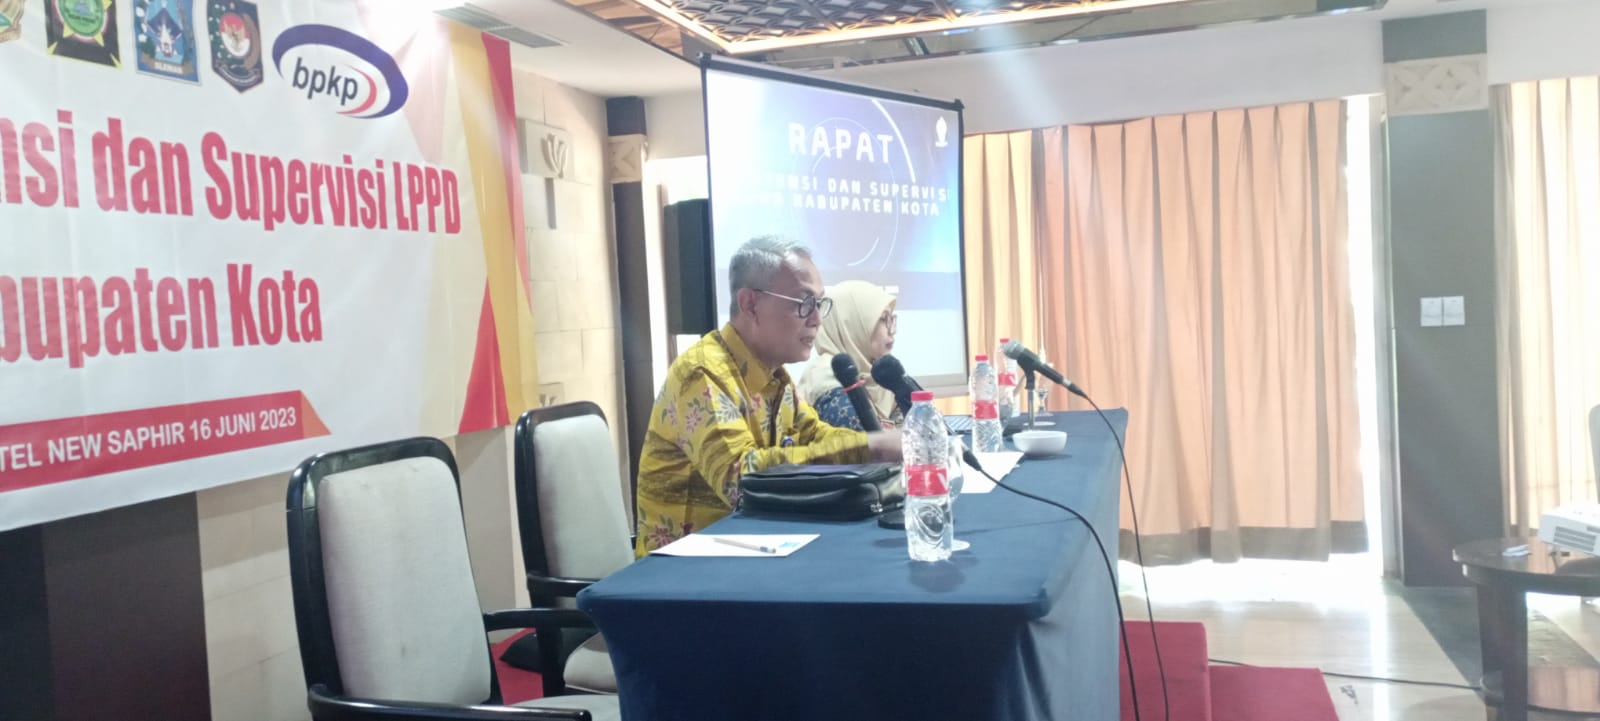 Rapat Asistensi dan Supervisi LPPD Kabupaten Kota